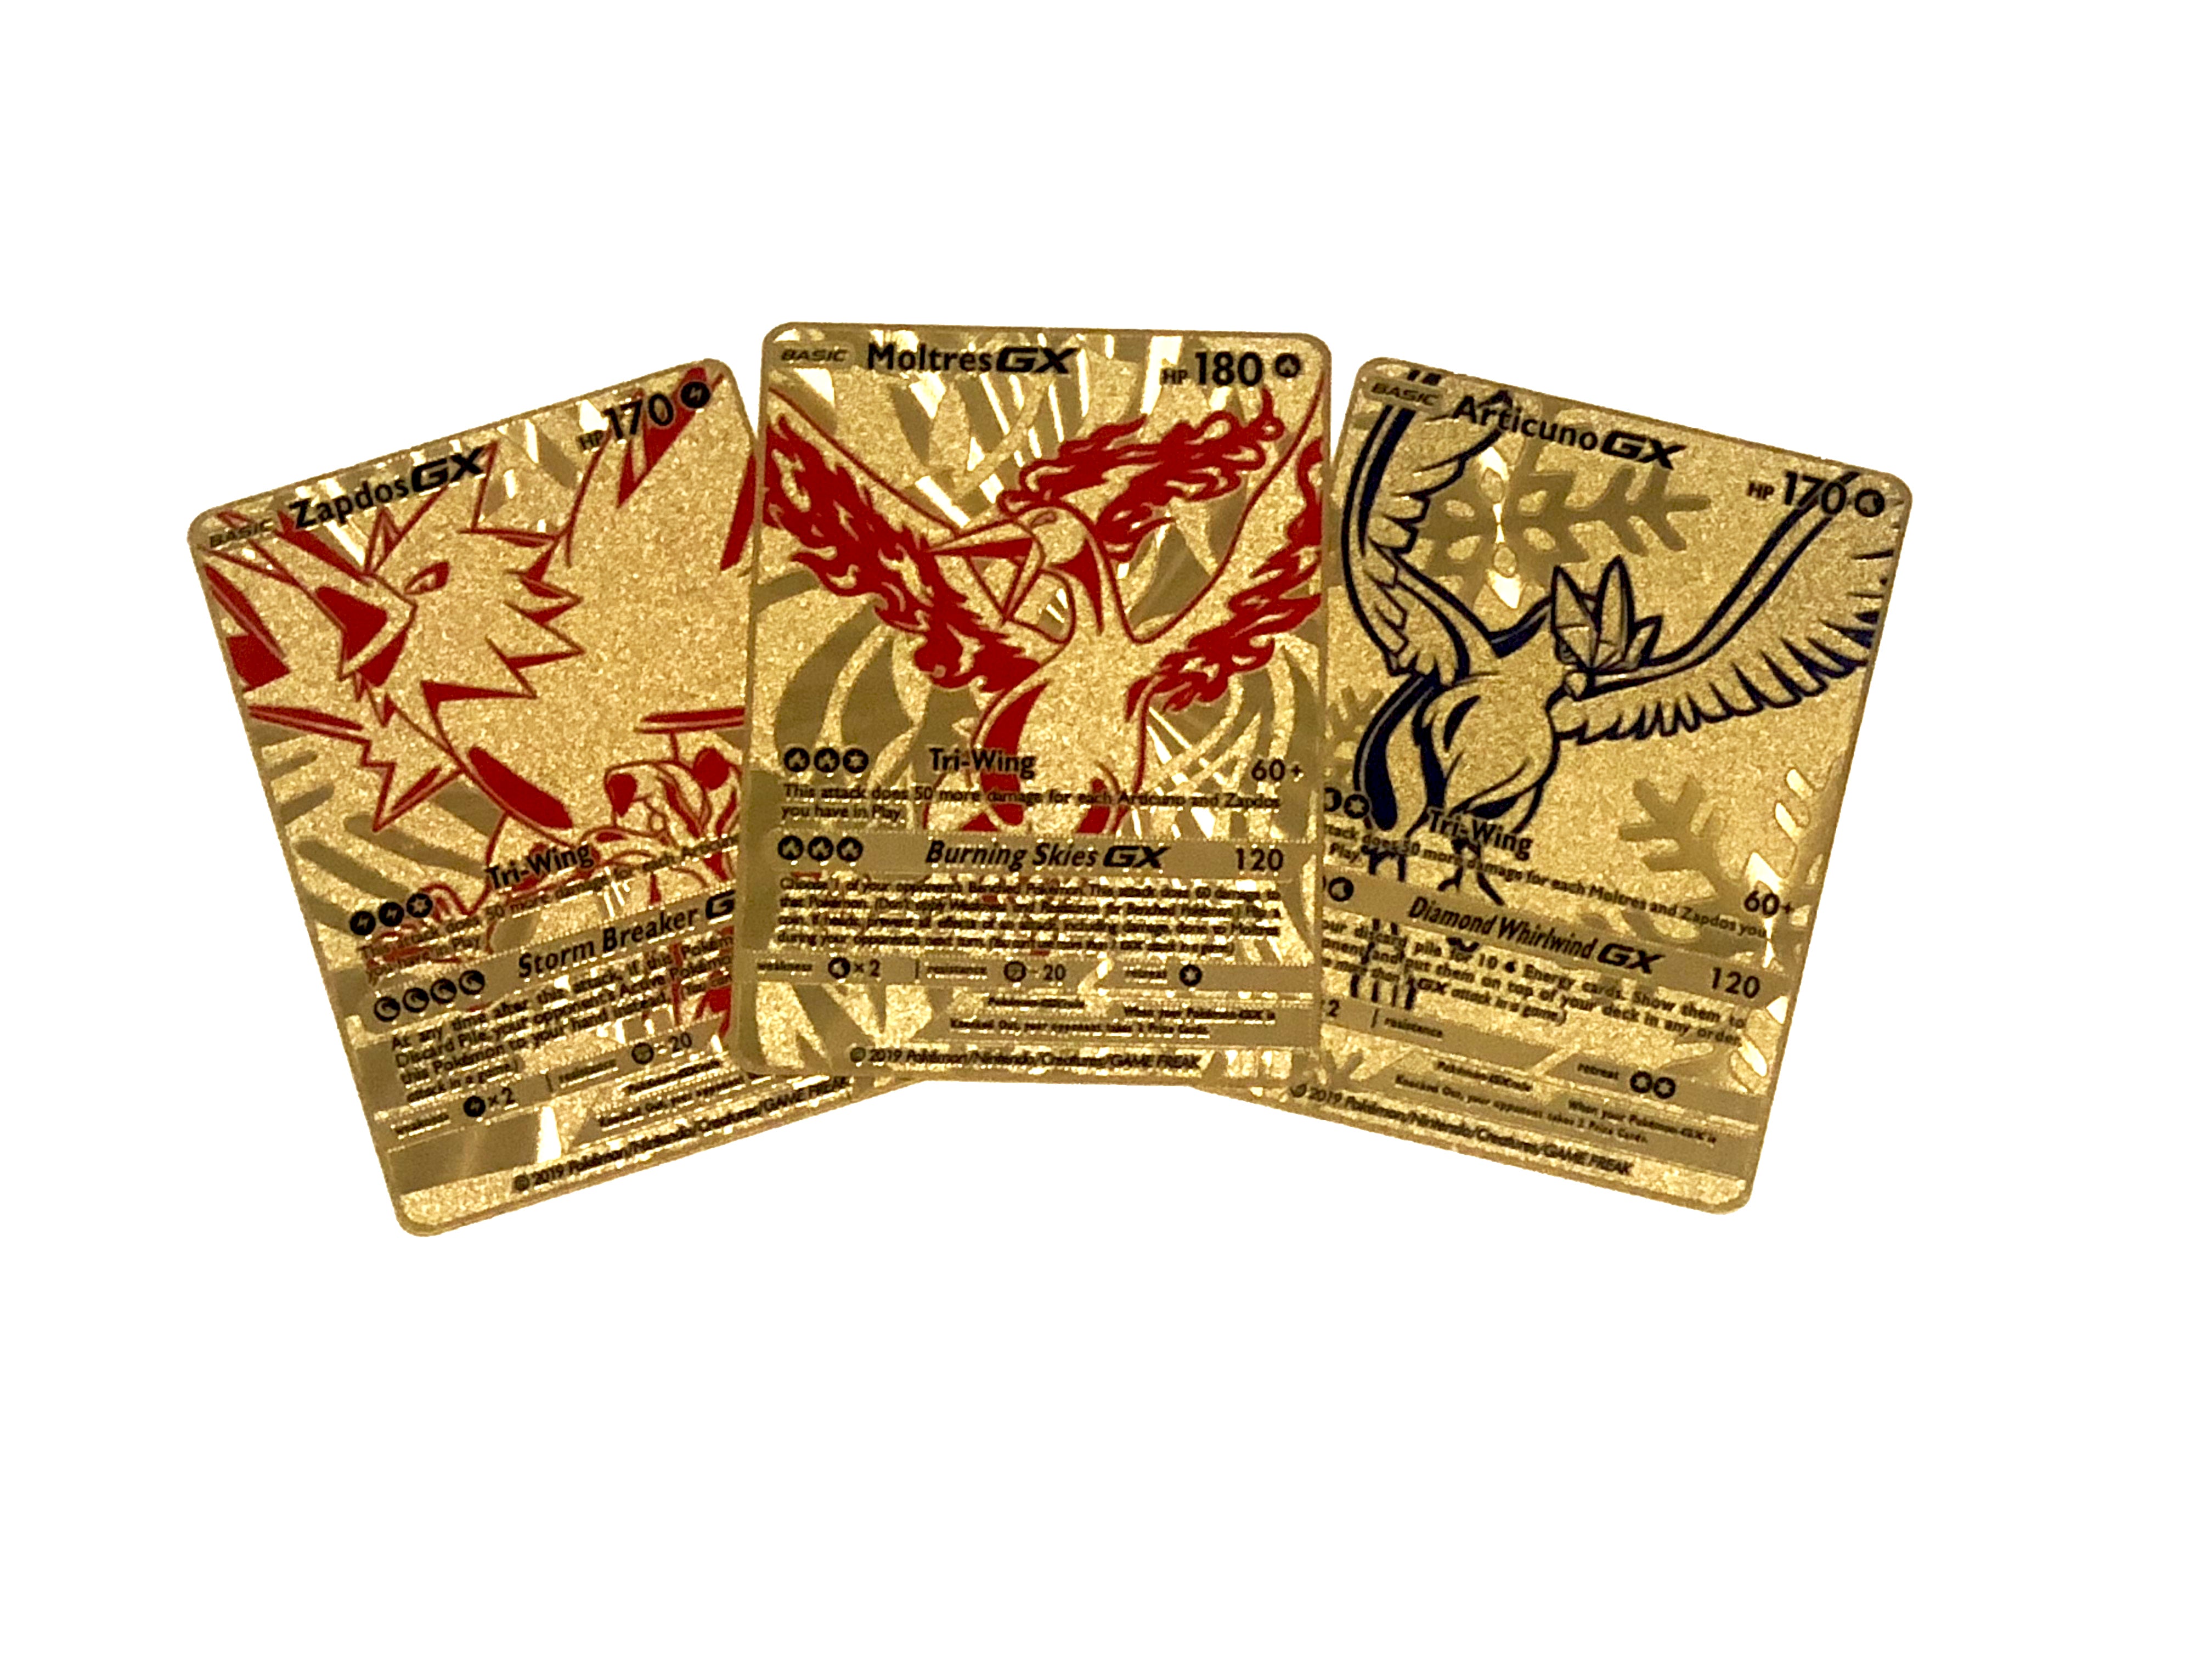 Pokémon Center Original Pokémon Card Game Deck Shield - Articuno Zapdos  Moltres